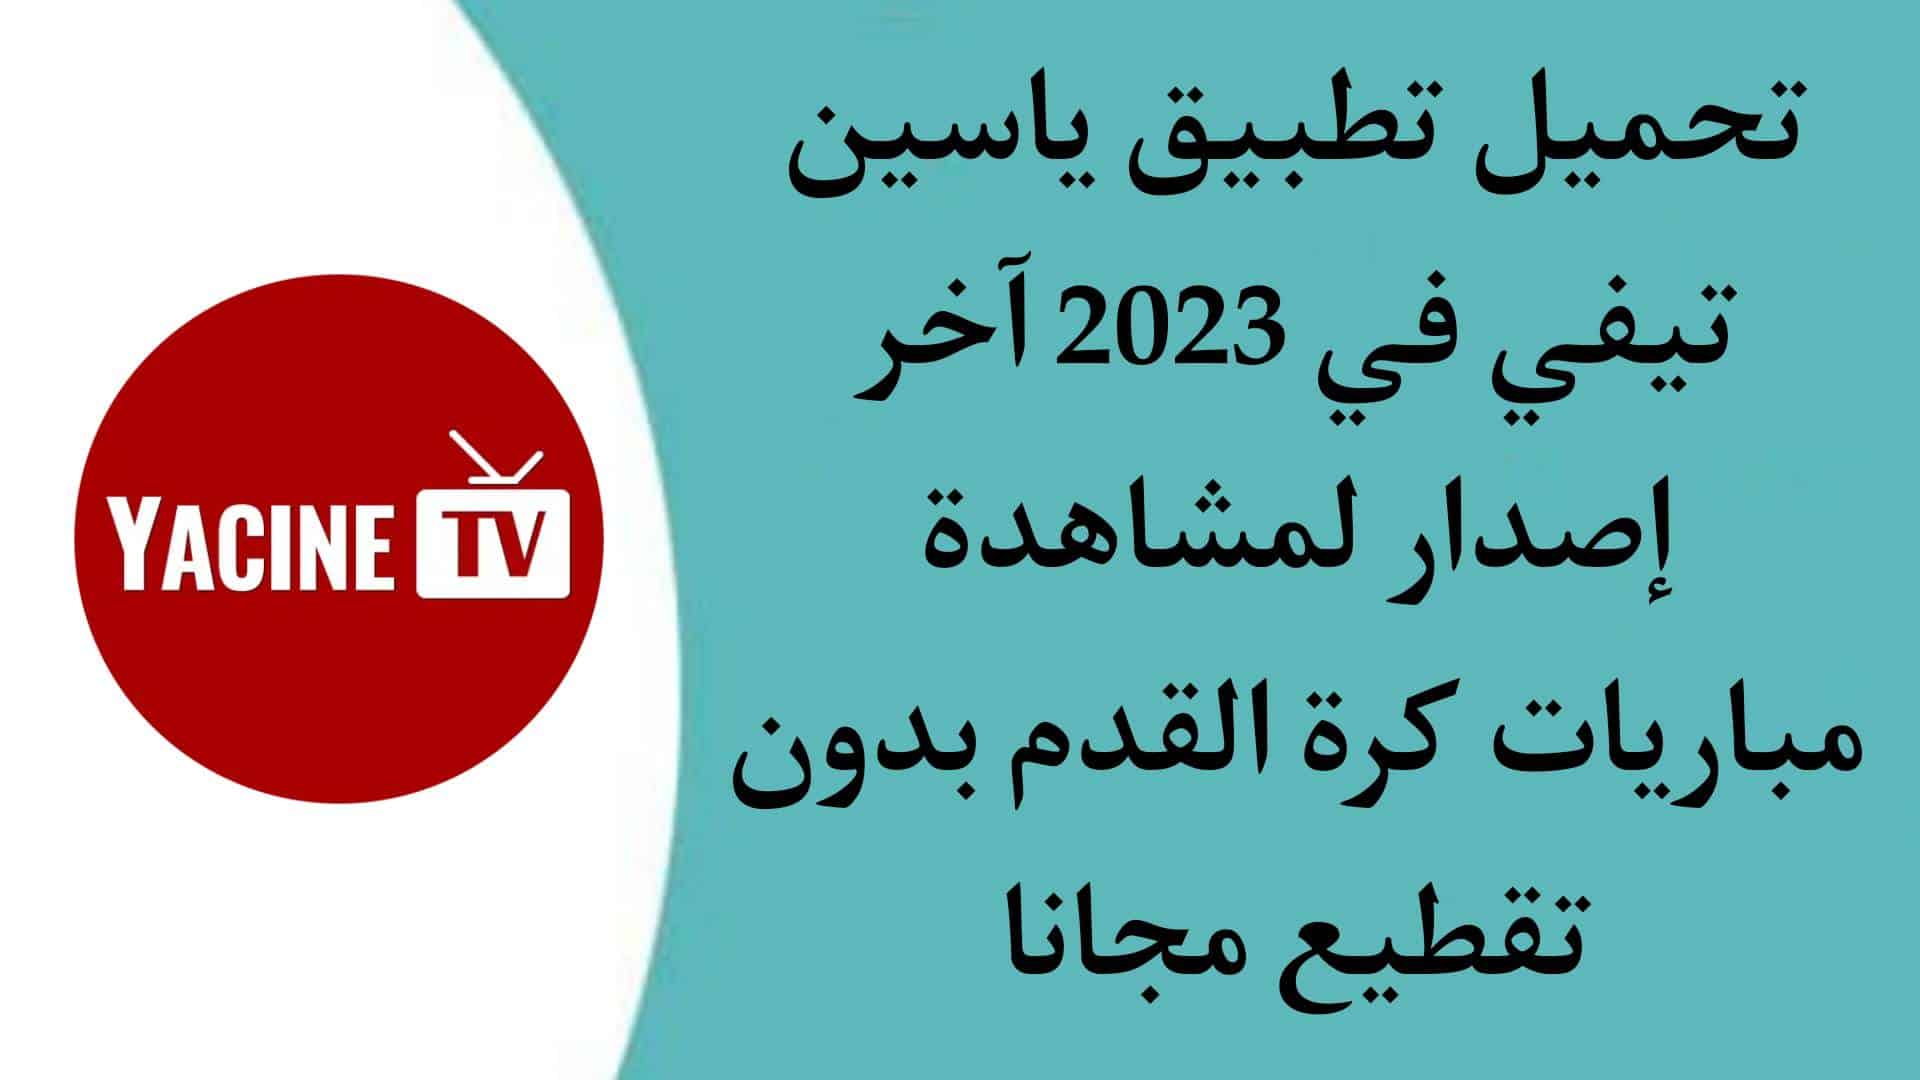 تحميل yacine tv télécharger ياسين تيفي 2023 بث مباشر اخر اصدار